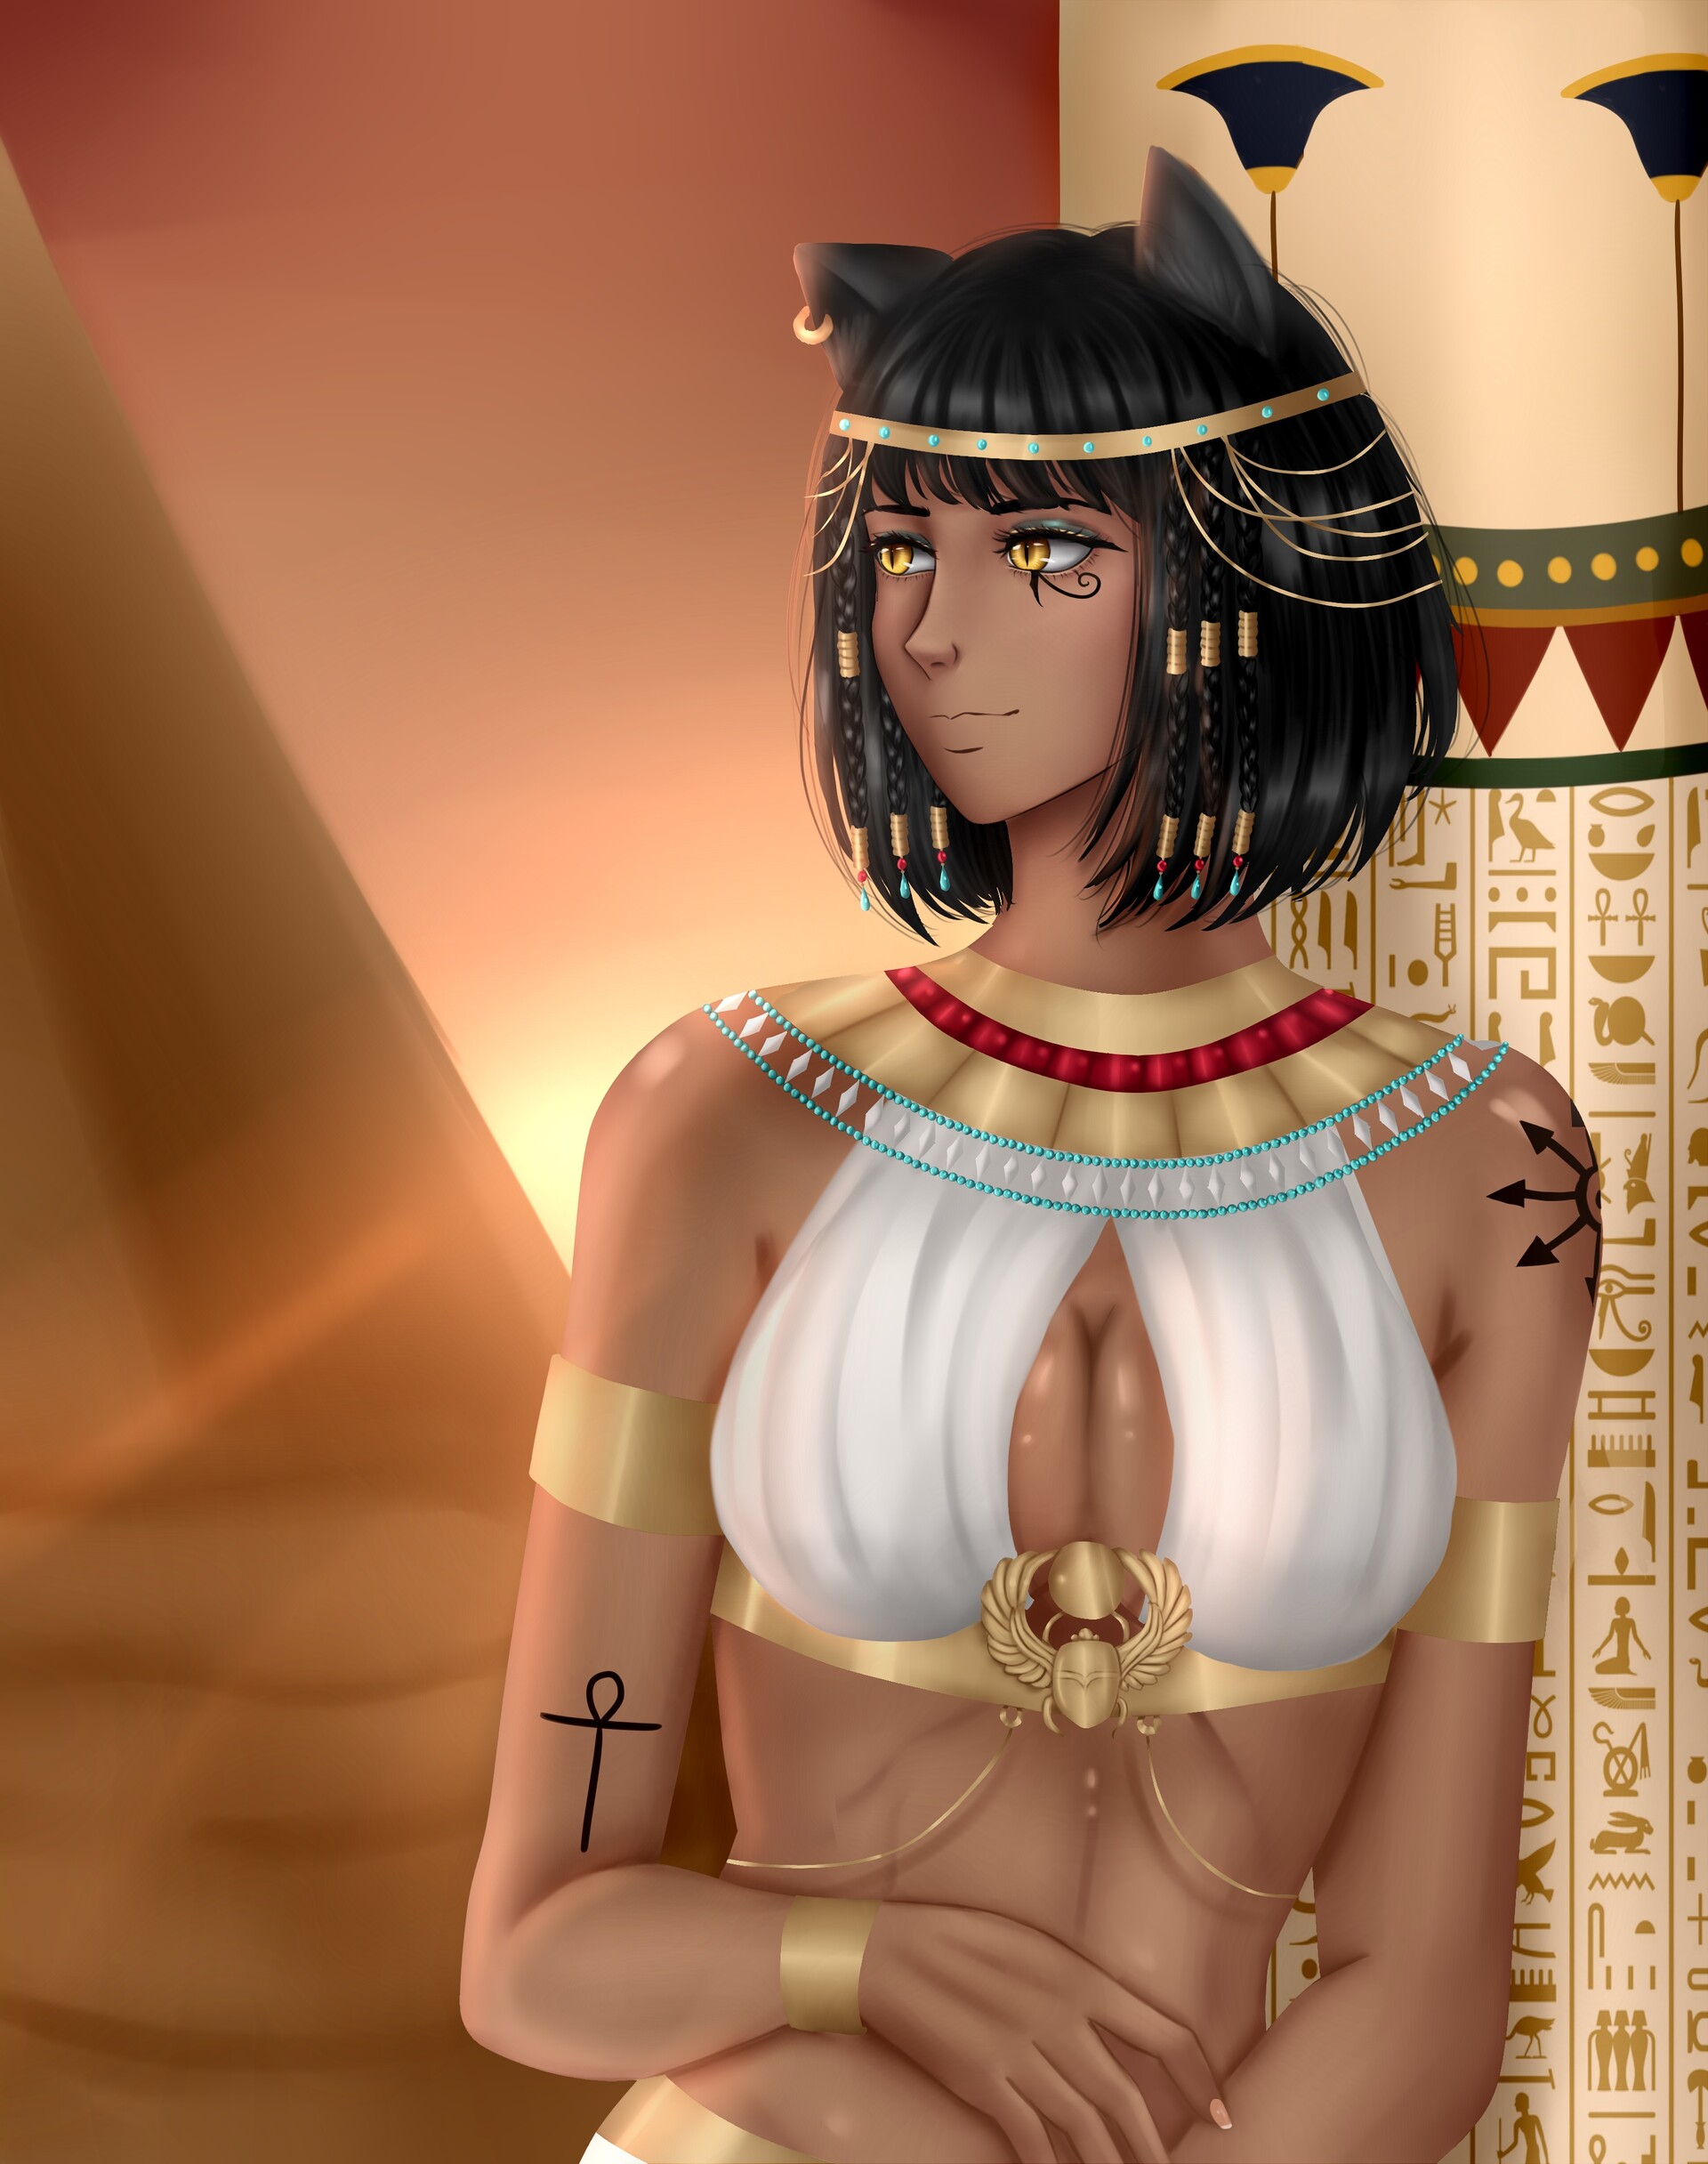 egyptian gods and goddesses anime - Clip Art Library